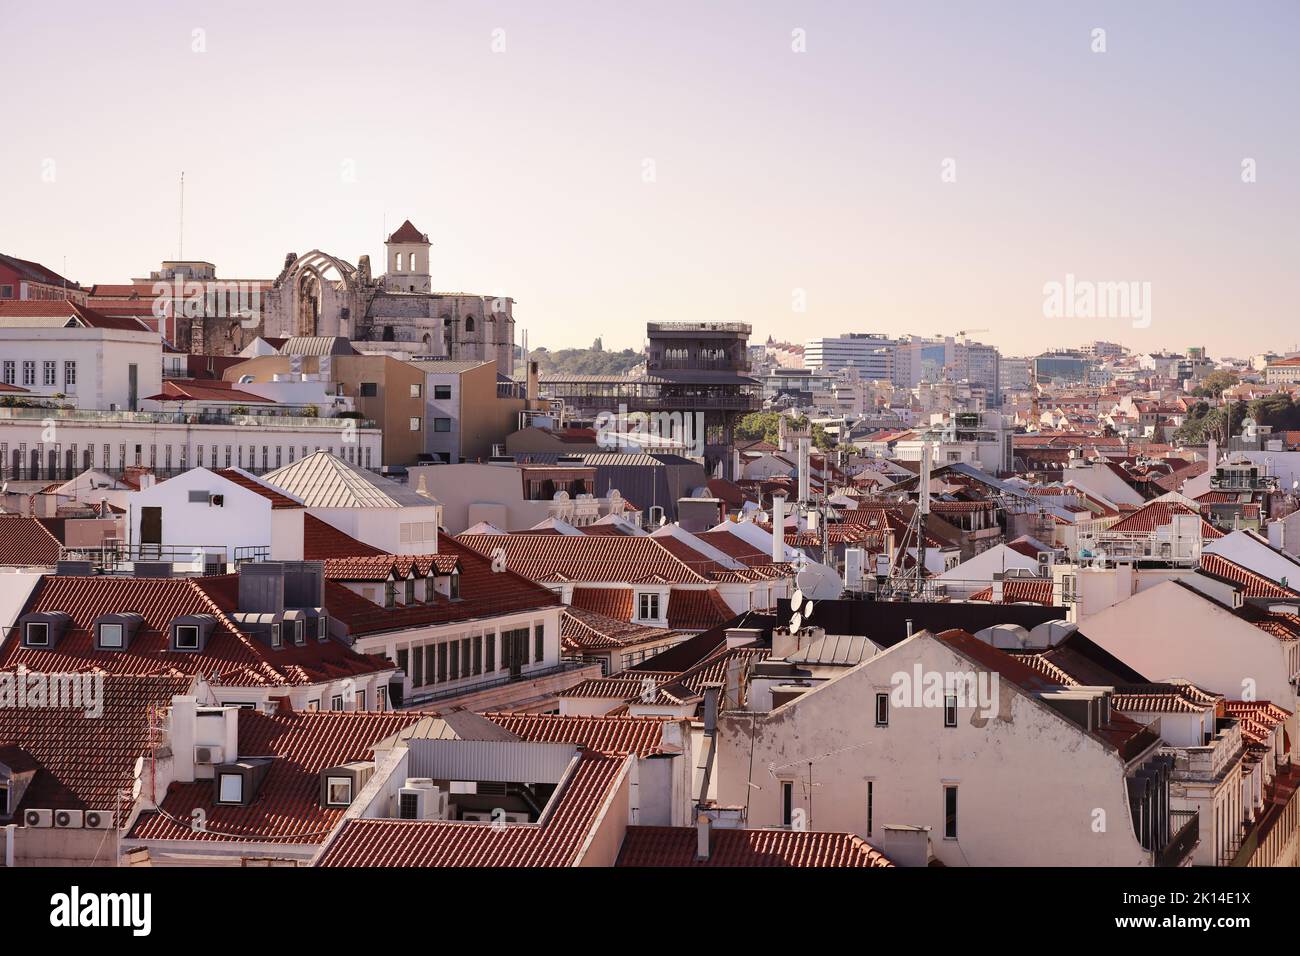 Lisbona, capitale del Portogallo. Paesaggio urbano con l'ascensore di Santa Justa, l'Elevador de Santa Justa e la rovinata chiesa di Carmo. Vista sul tetto di Lisbona al tramonto. Foto Stock